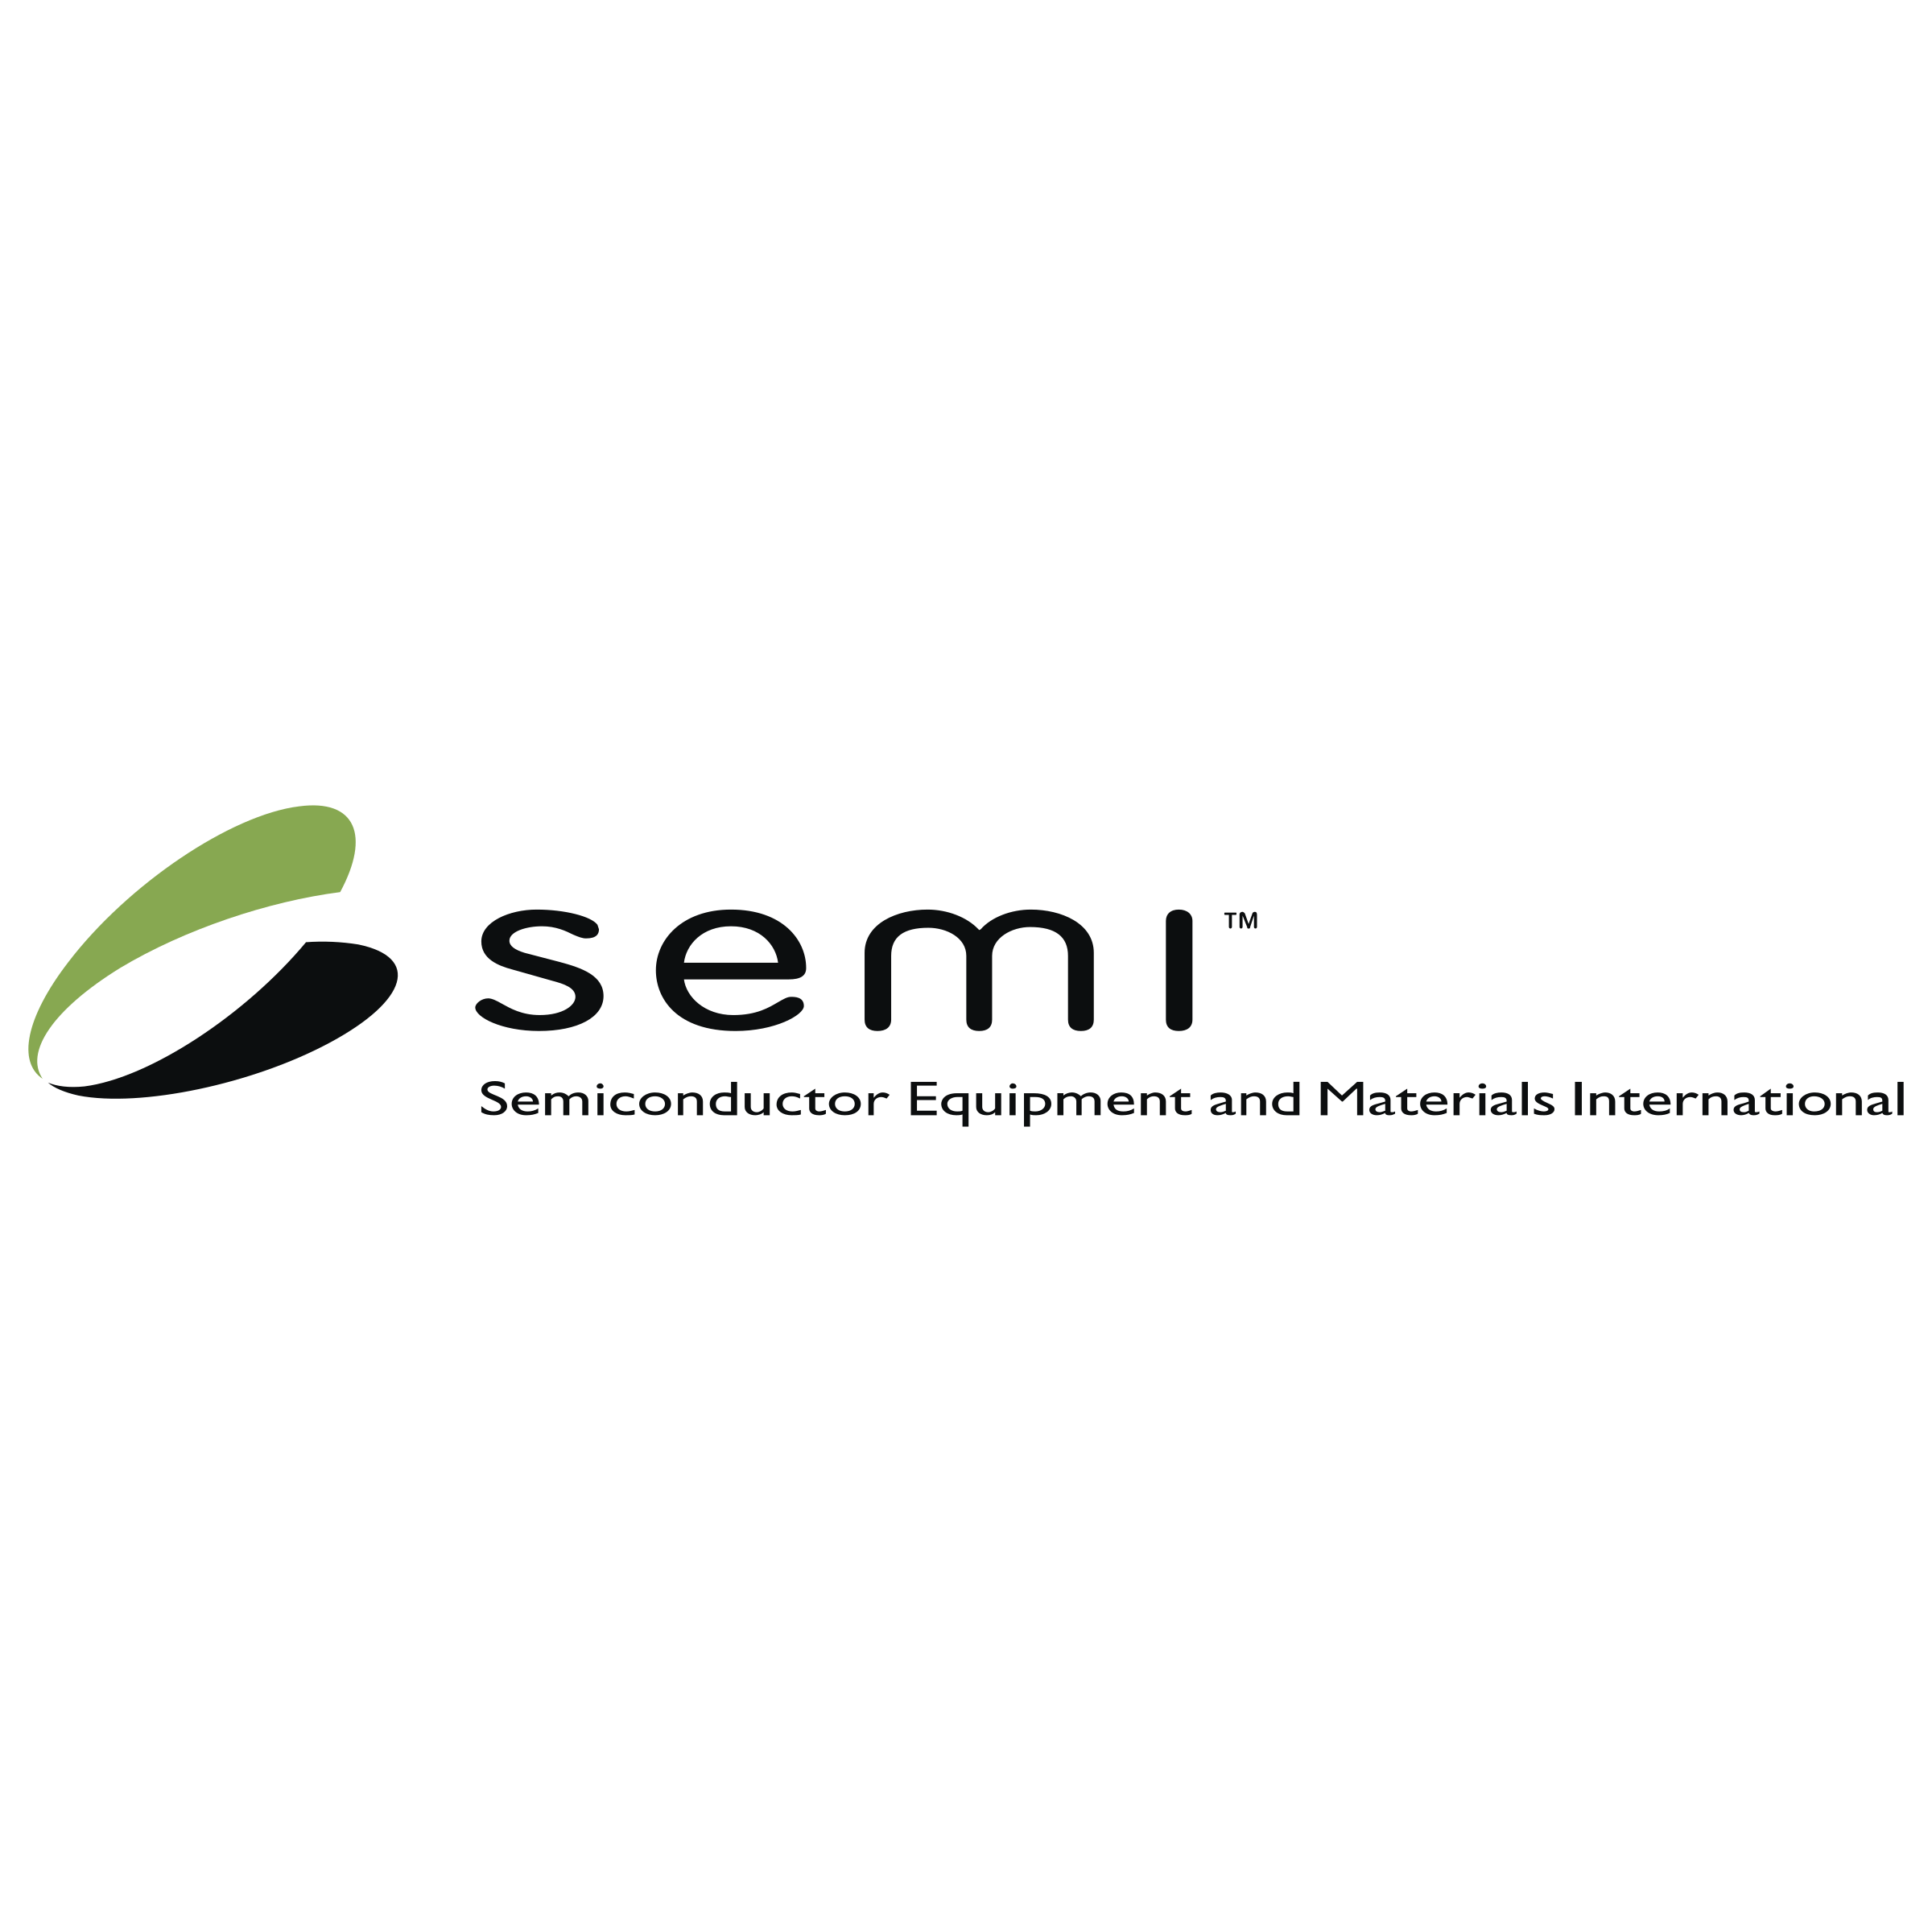 Semi Logo - Semi Logo PNG Transparent & SVG Vector